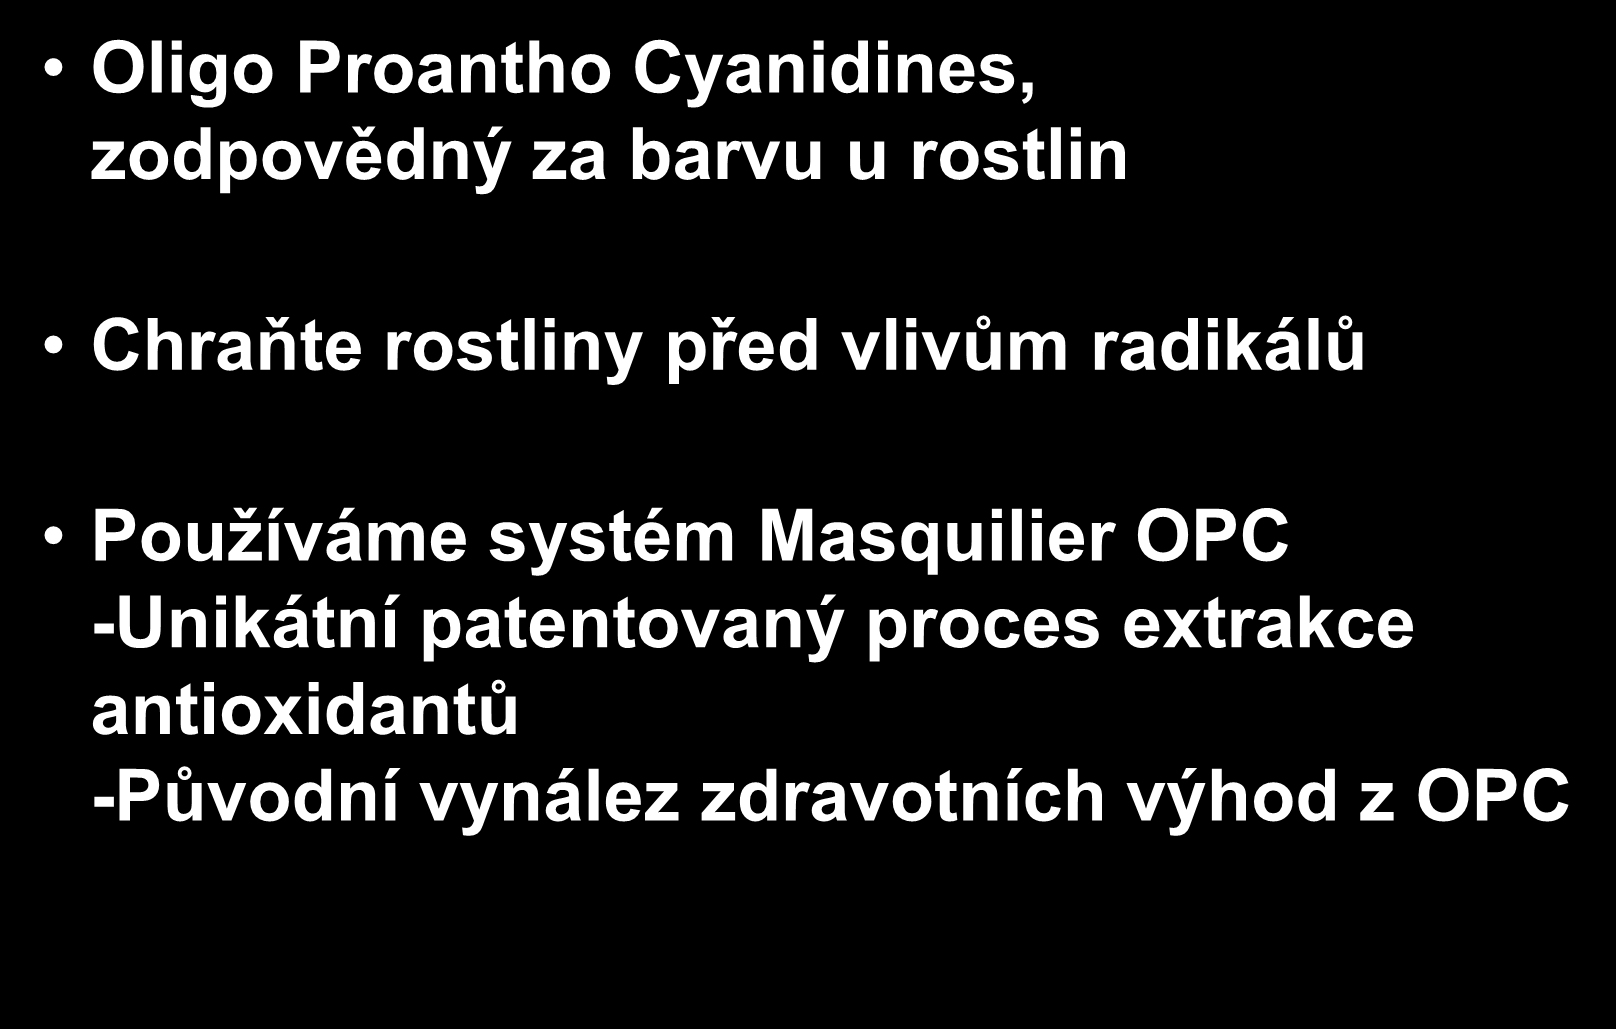 OPC patentované směsy Oligo Proantho Cyanidines, zodpovědný za barvu u rostlin Chraňte rostliny před vlivům radikálů